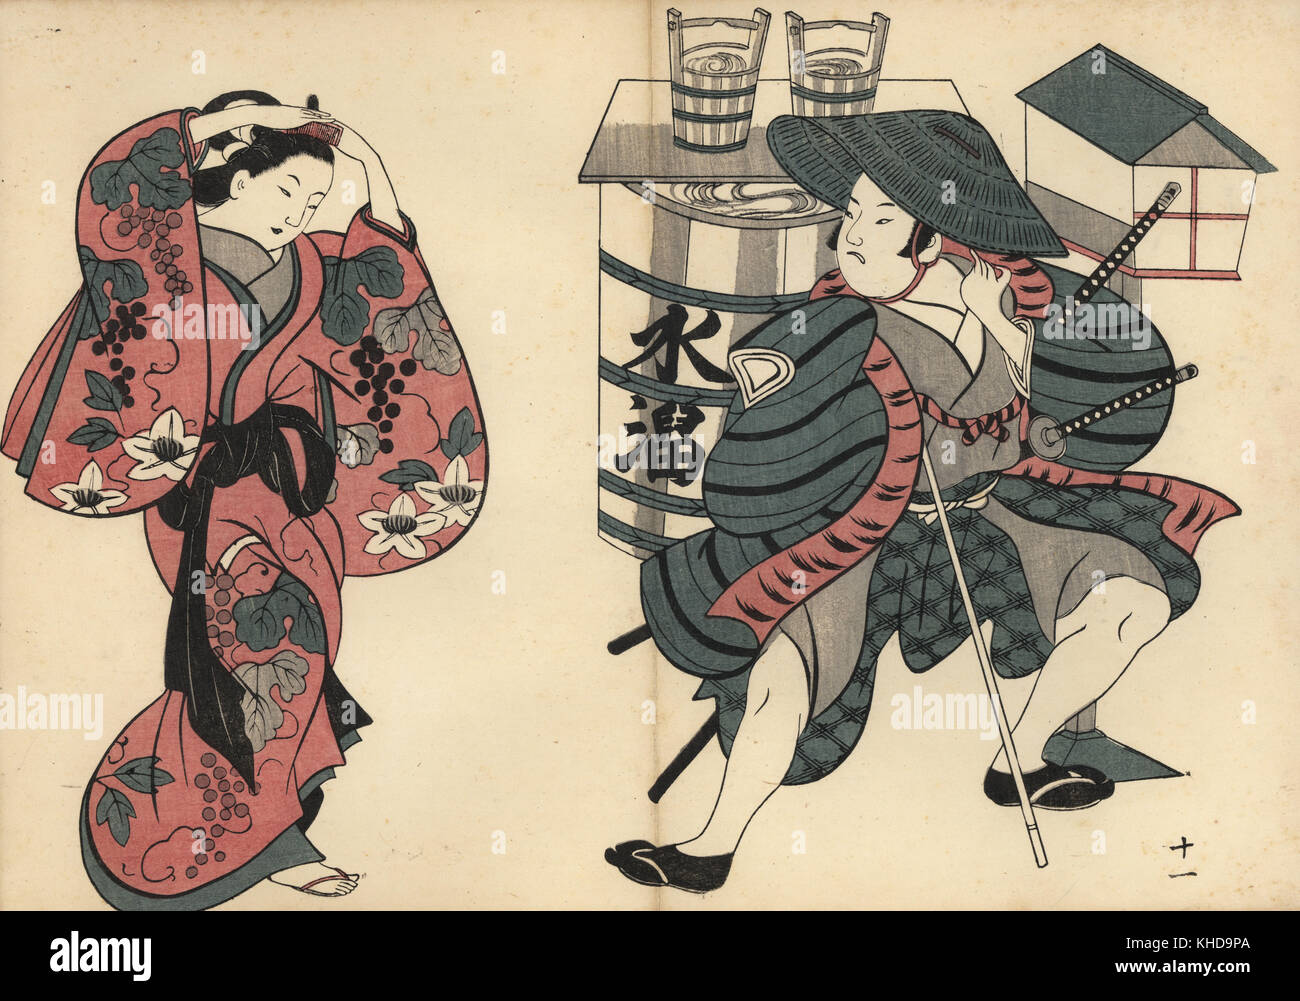 Oiran Kurtisane Festsetzung ihr Haar, während ein Samurai Uhren vor einem Fass im Wasser vergnügen. Holzschnitt von masanobu Okumura (1686-1764) von Fuzoku Emakimono, Bild Scrollen von Wasser Handel, Tokio, Reprint circa 1880. Stockfoto